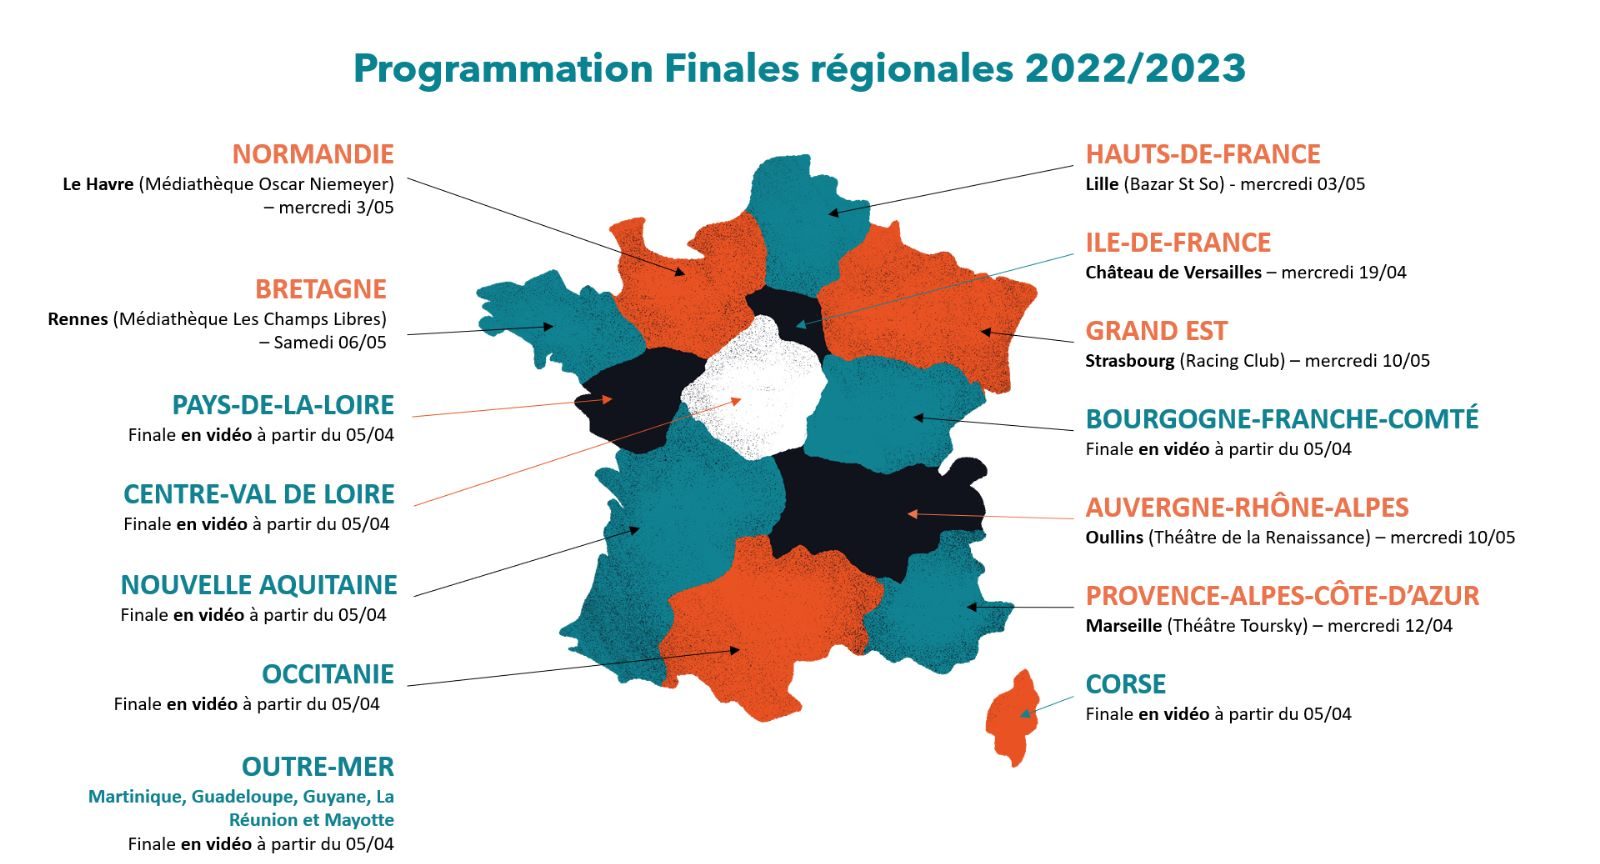 Finales régionales 2022/2023